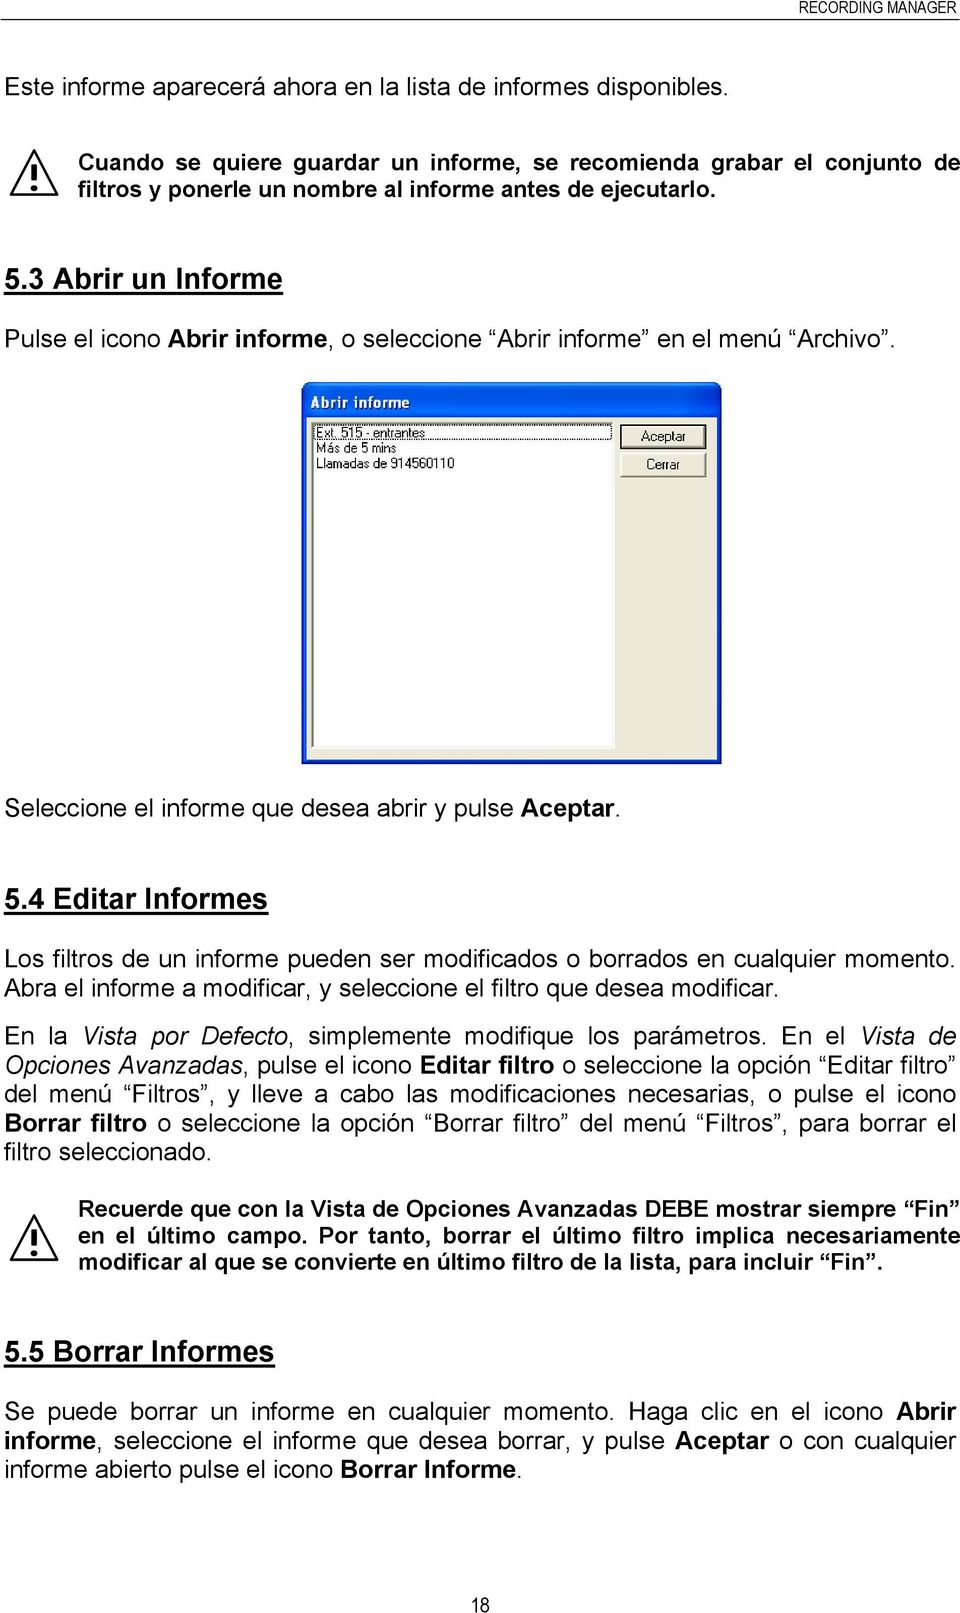 4 Editar Informes Los filtros de un informe pueden ser modificados o borrados en cualquier momento. Abra el informe a modificar, y seleccione el filtro que desea modificar.